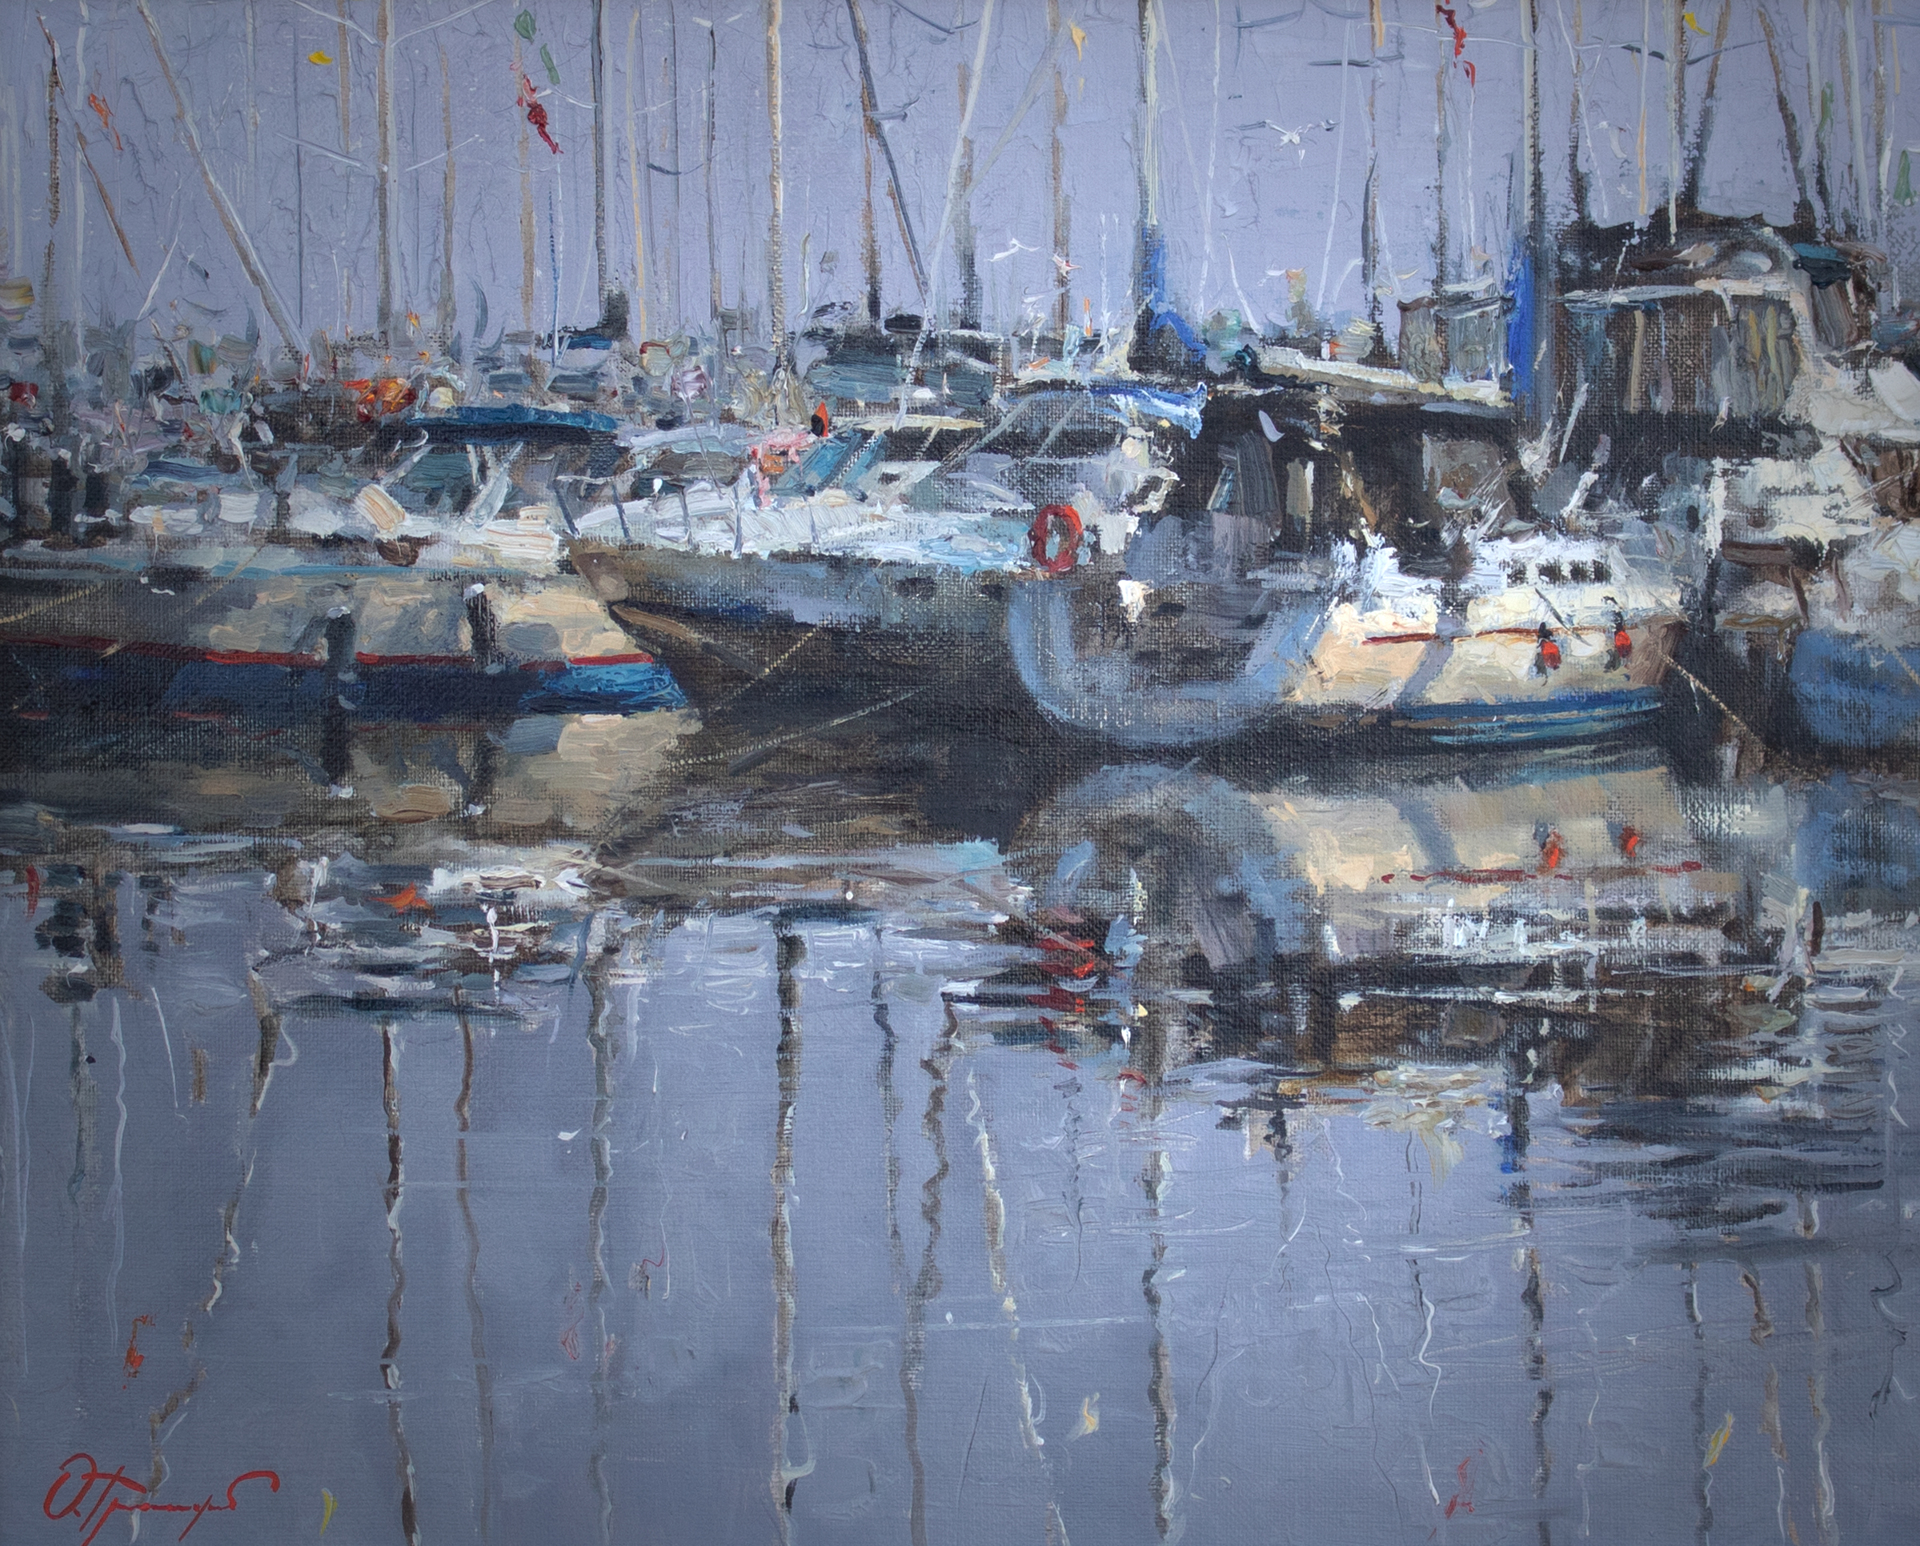 "On the Marina" by Oleg Trofimov